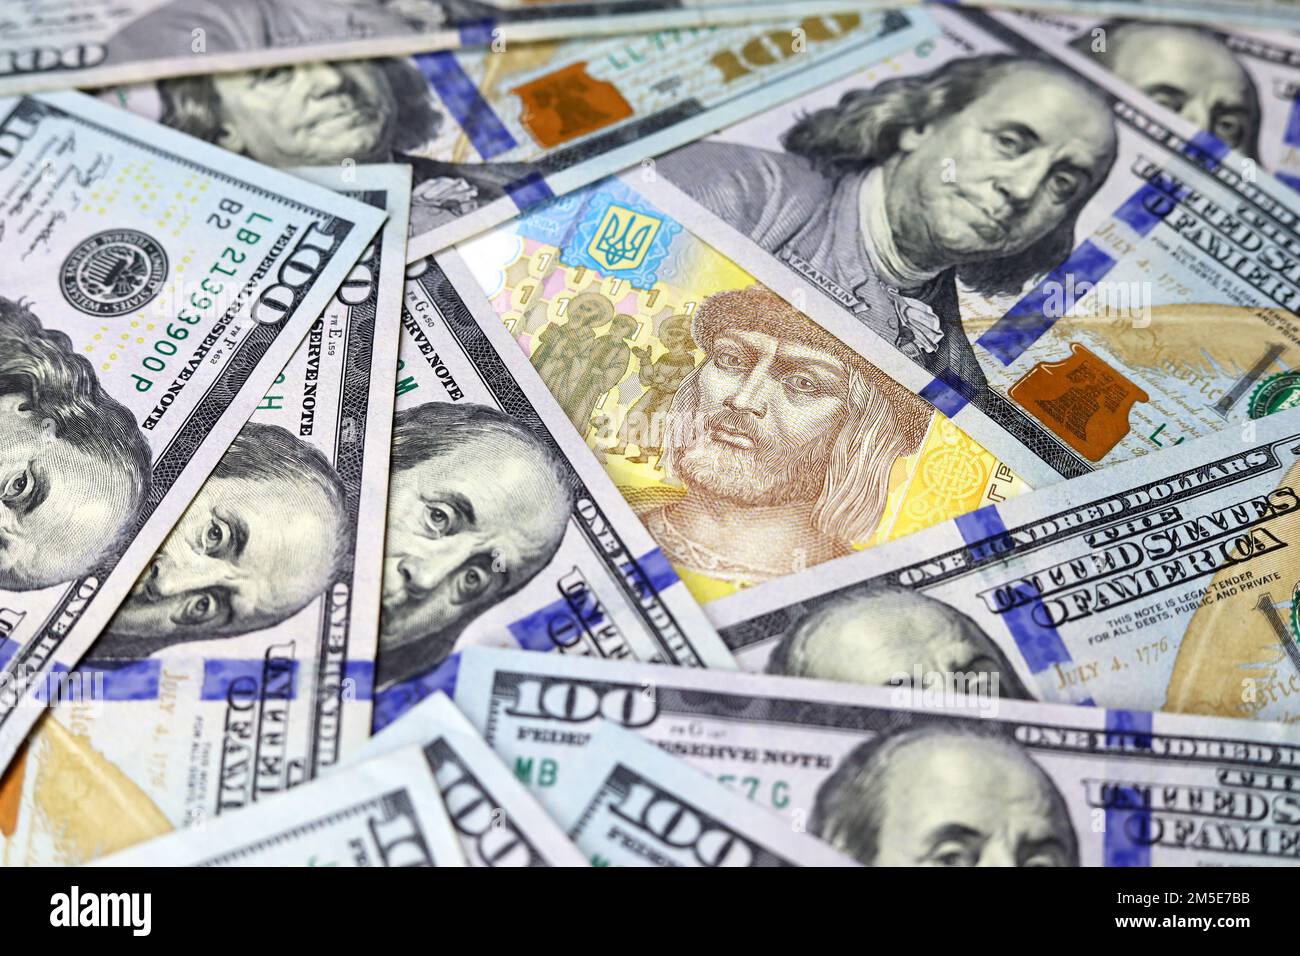 Irivnia Ucraina circondata da banconote in dollari statunitensi. Concetto di assistenza americana per l'Ucraina, tasso di cambio Foto Stock